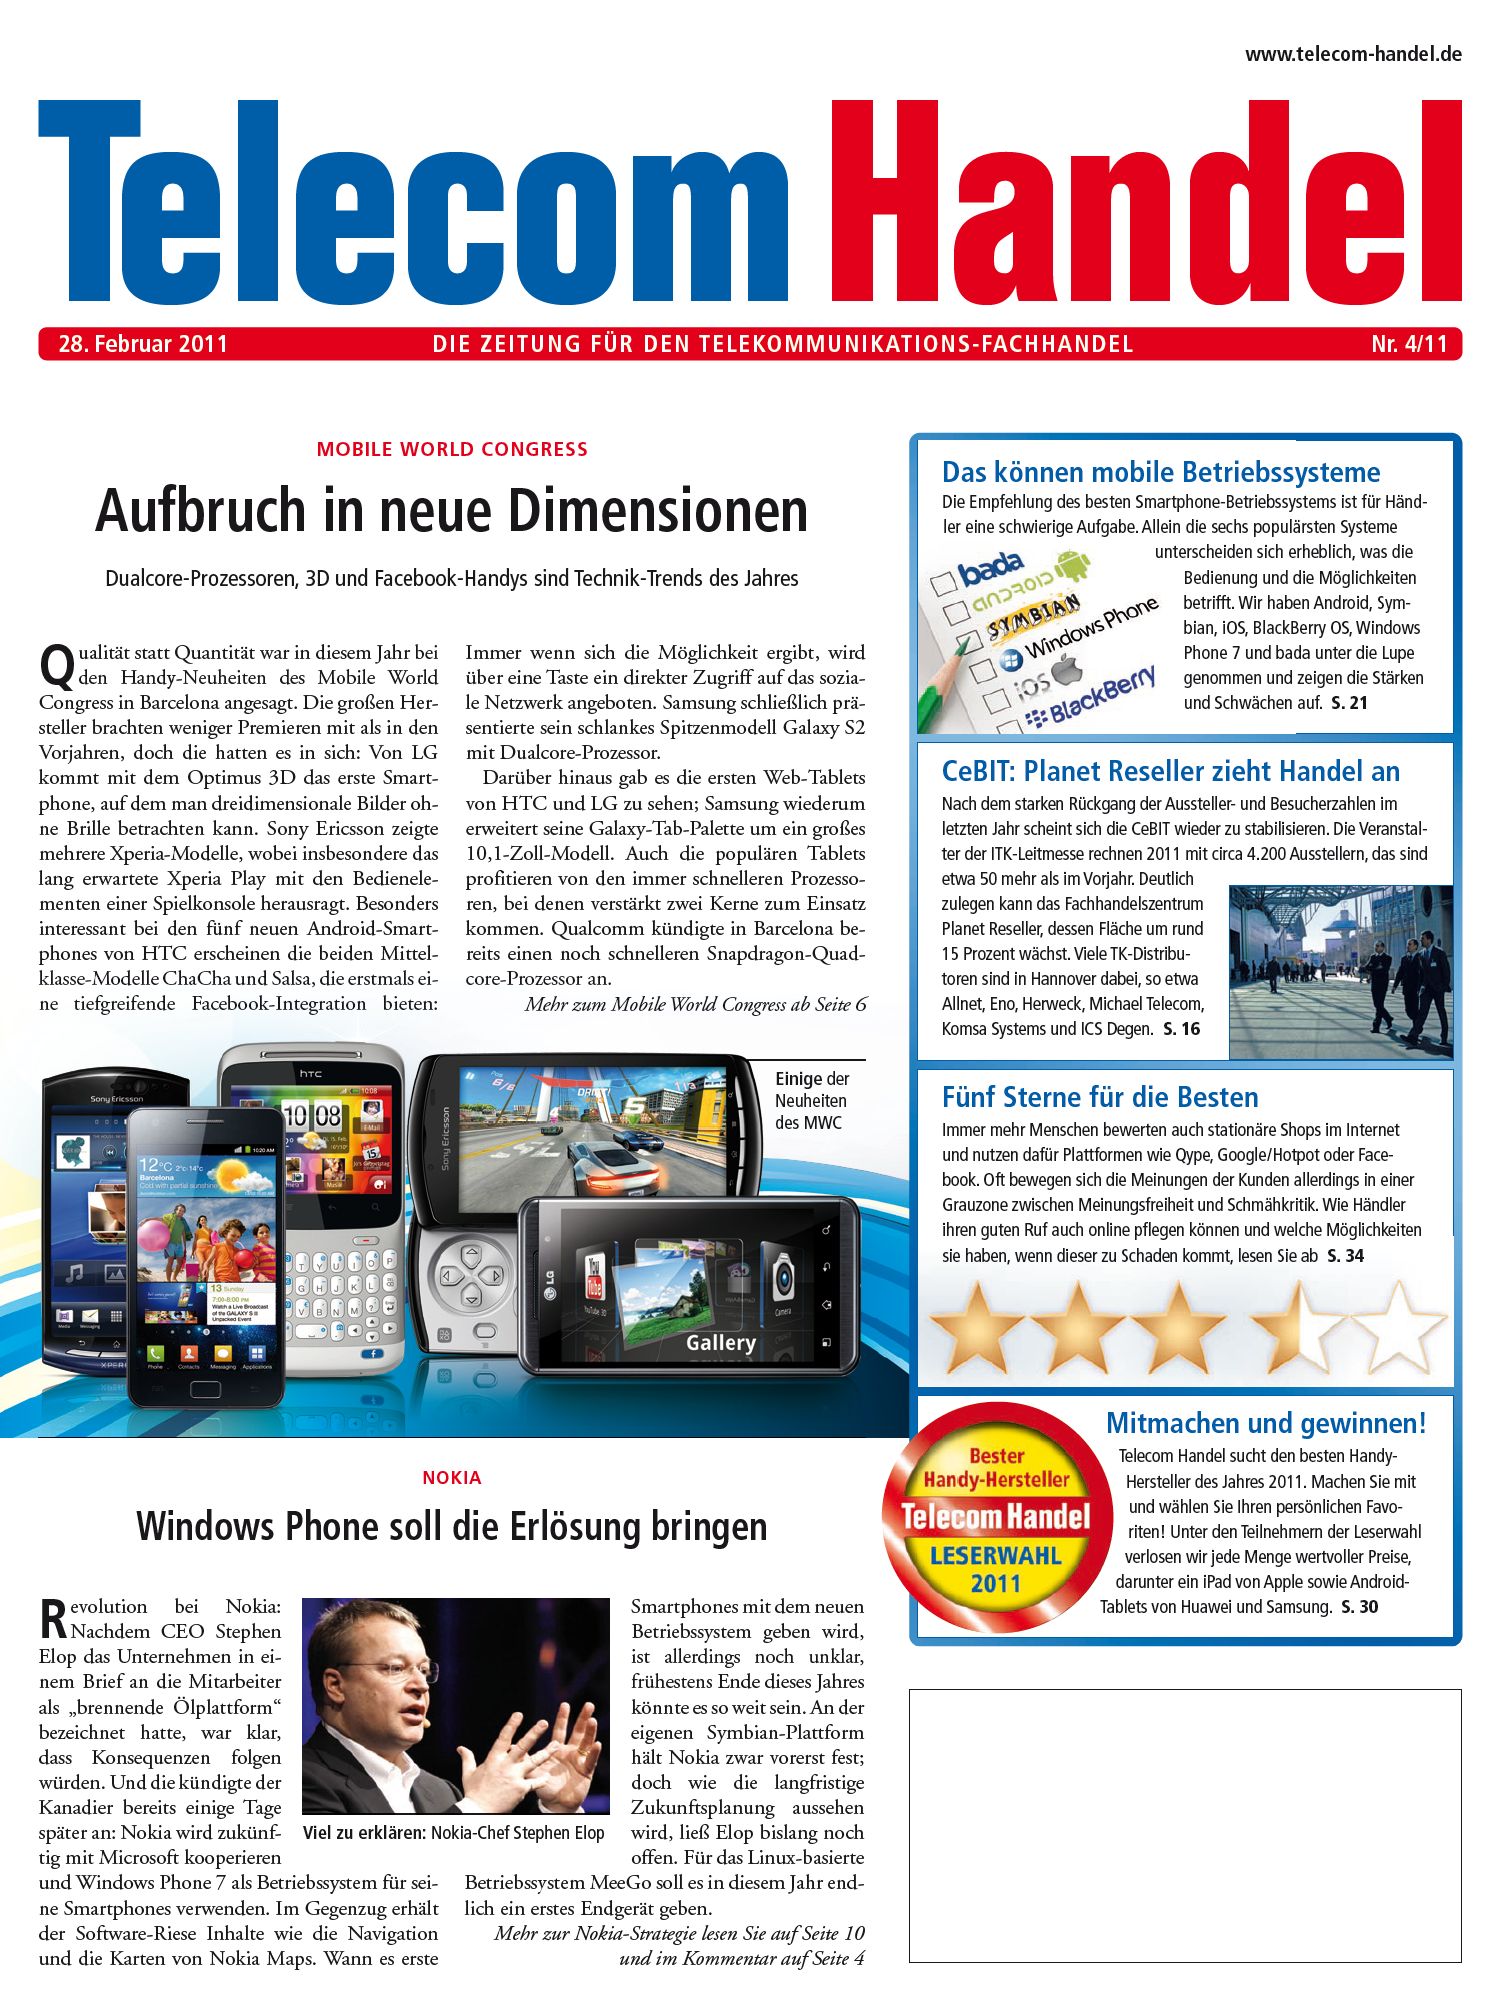 Telecom Handel Ausgabe 04/2011